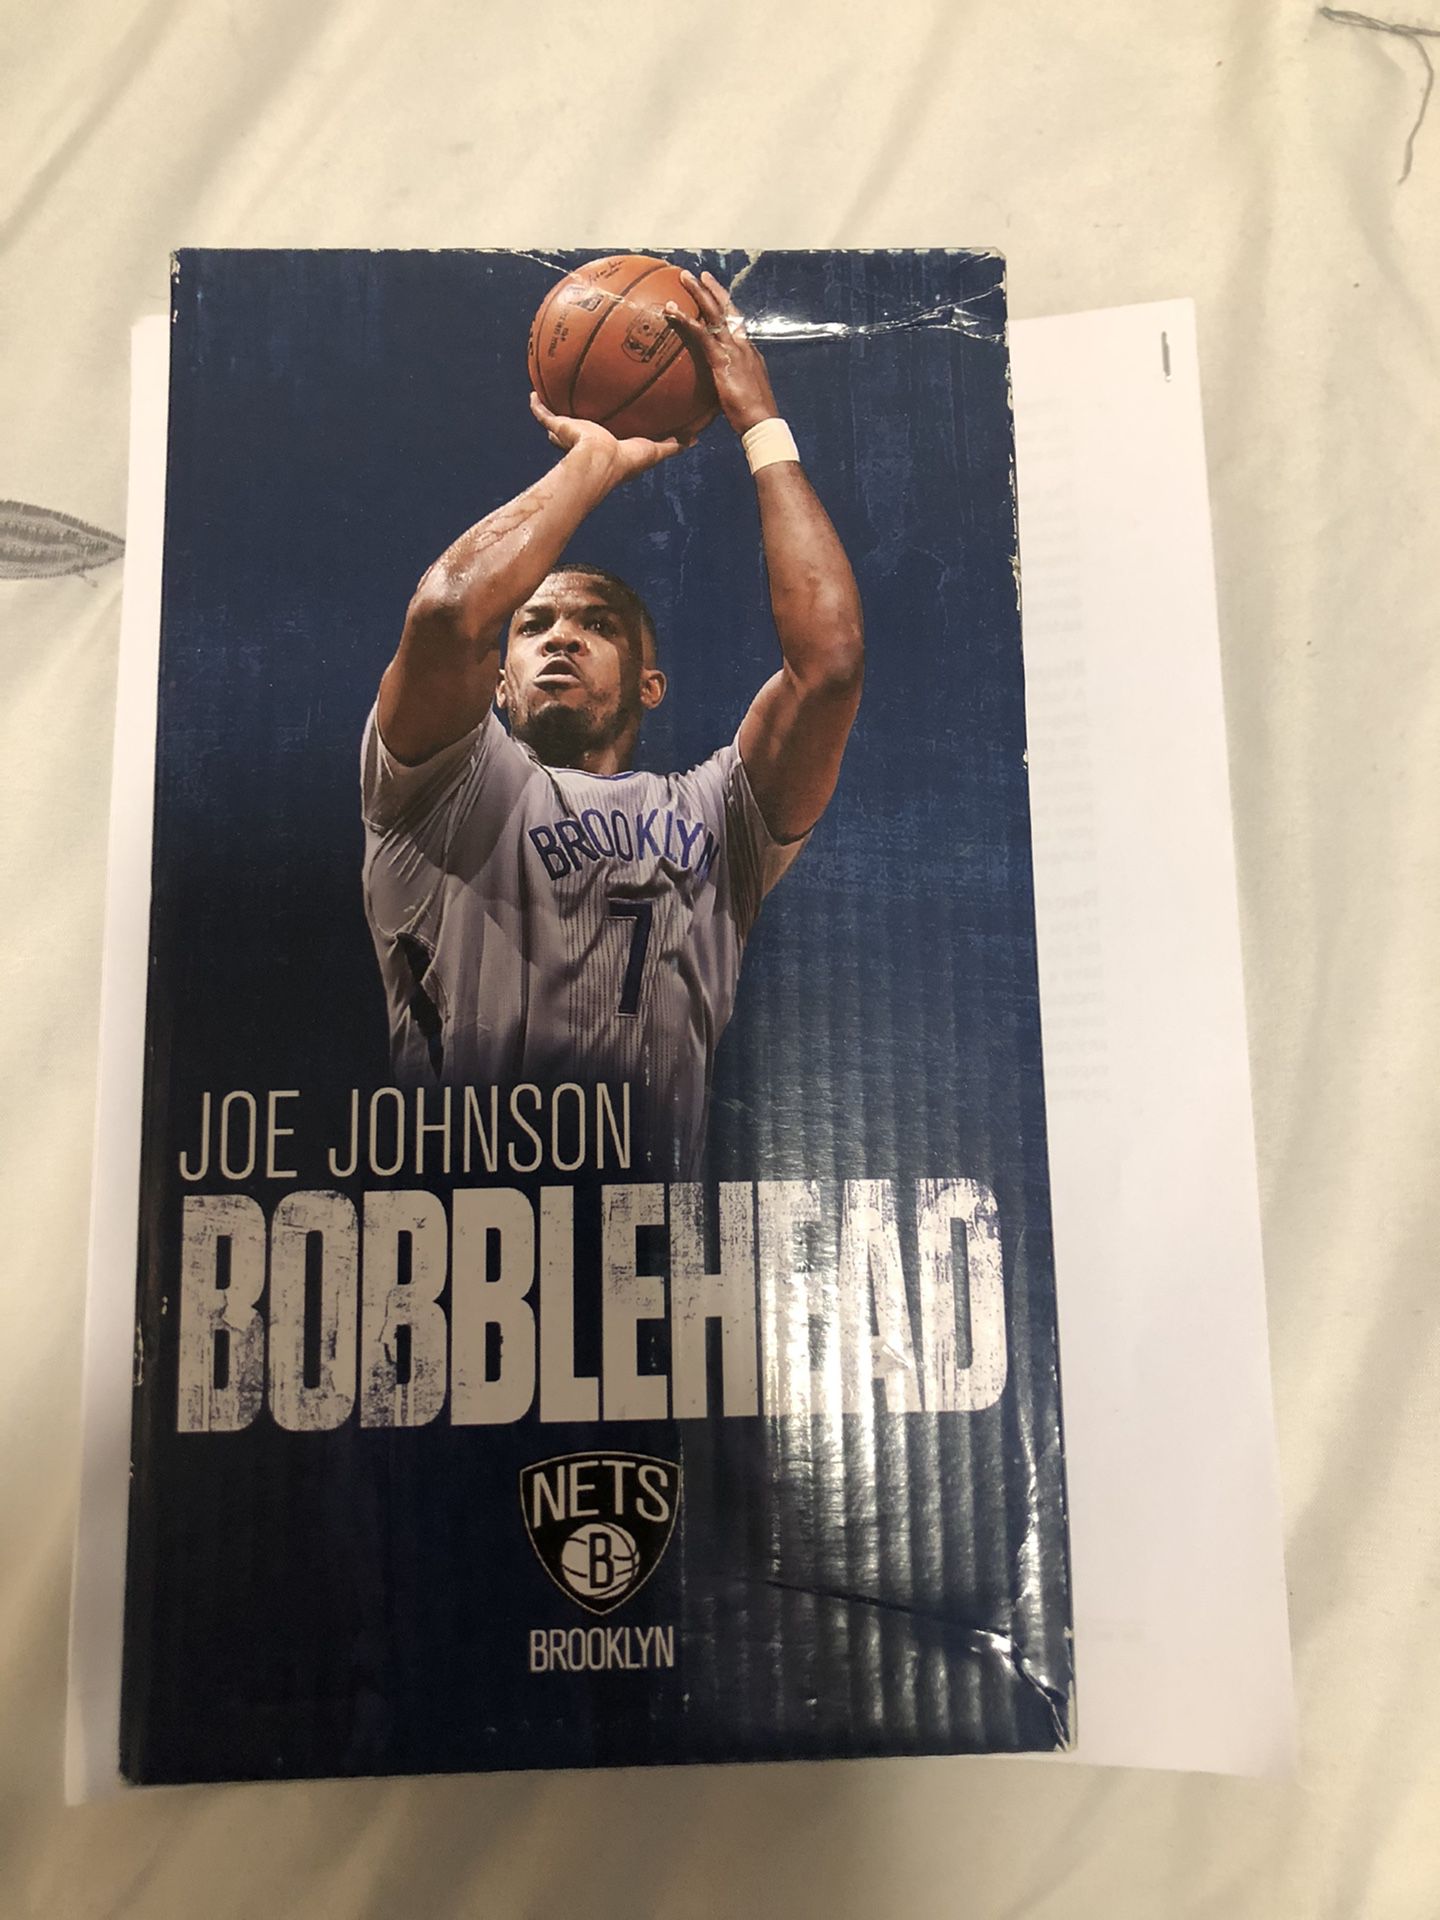 Joe Johnson Bubblehead $15